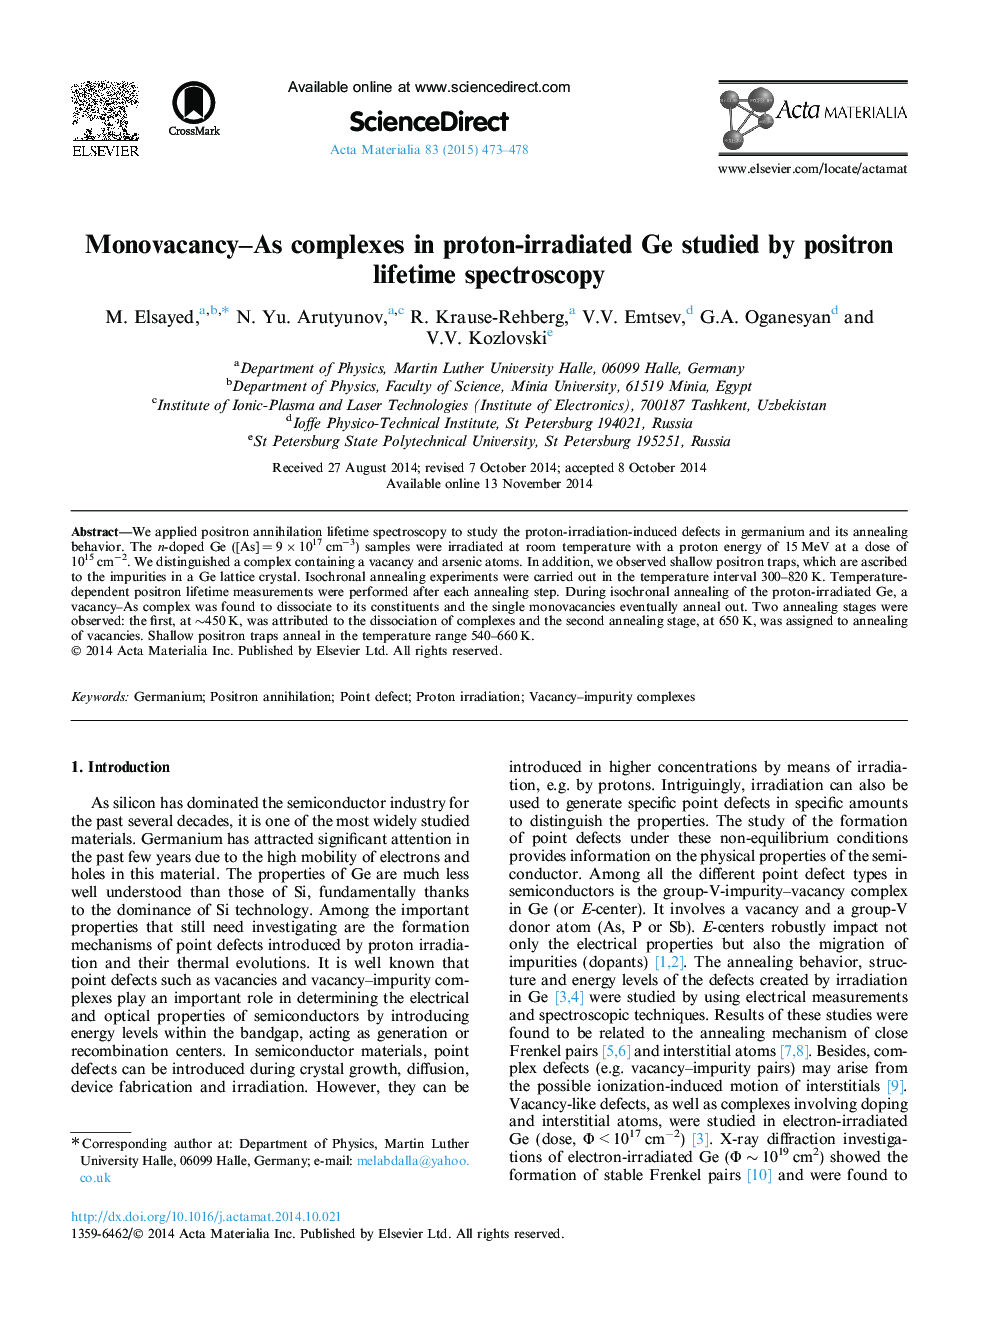 طیف سنجی طول عمر پوزیترون مطالعه خواص پیچیده مونواوکانانس-به عنوان پروتئین مورد بررسی قرار گرفت 